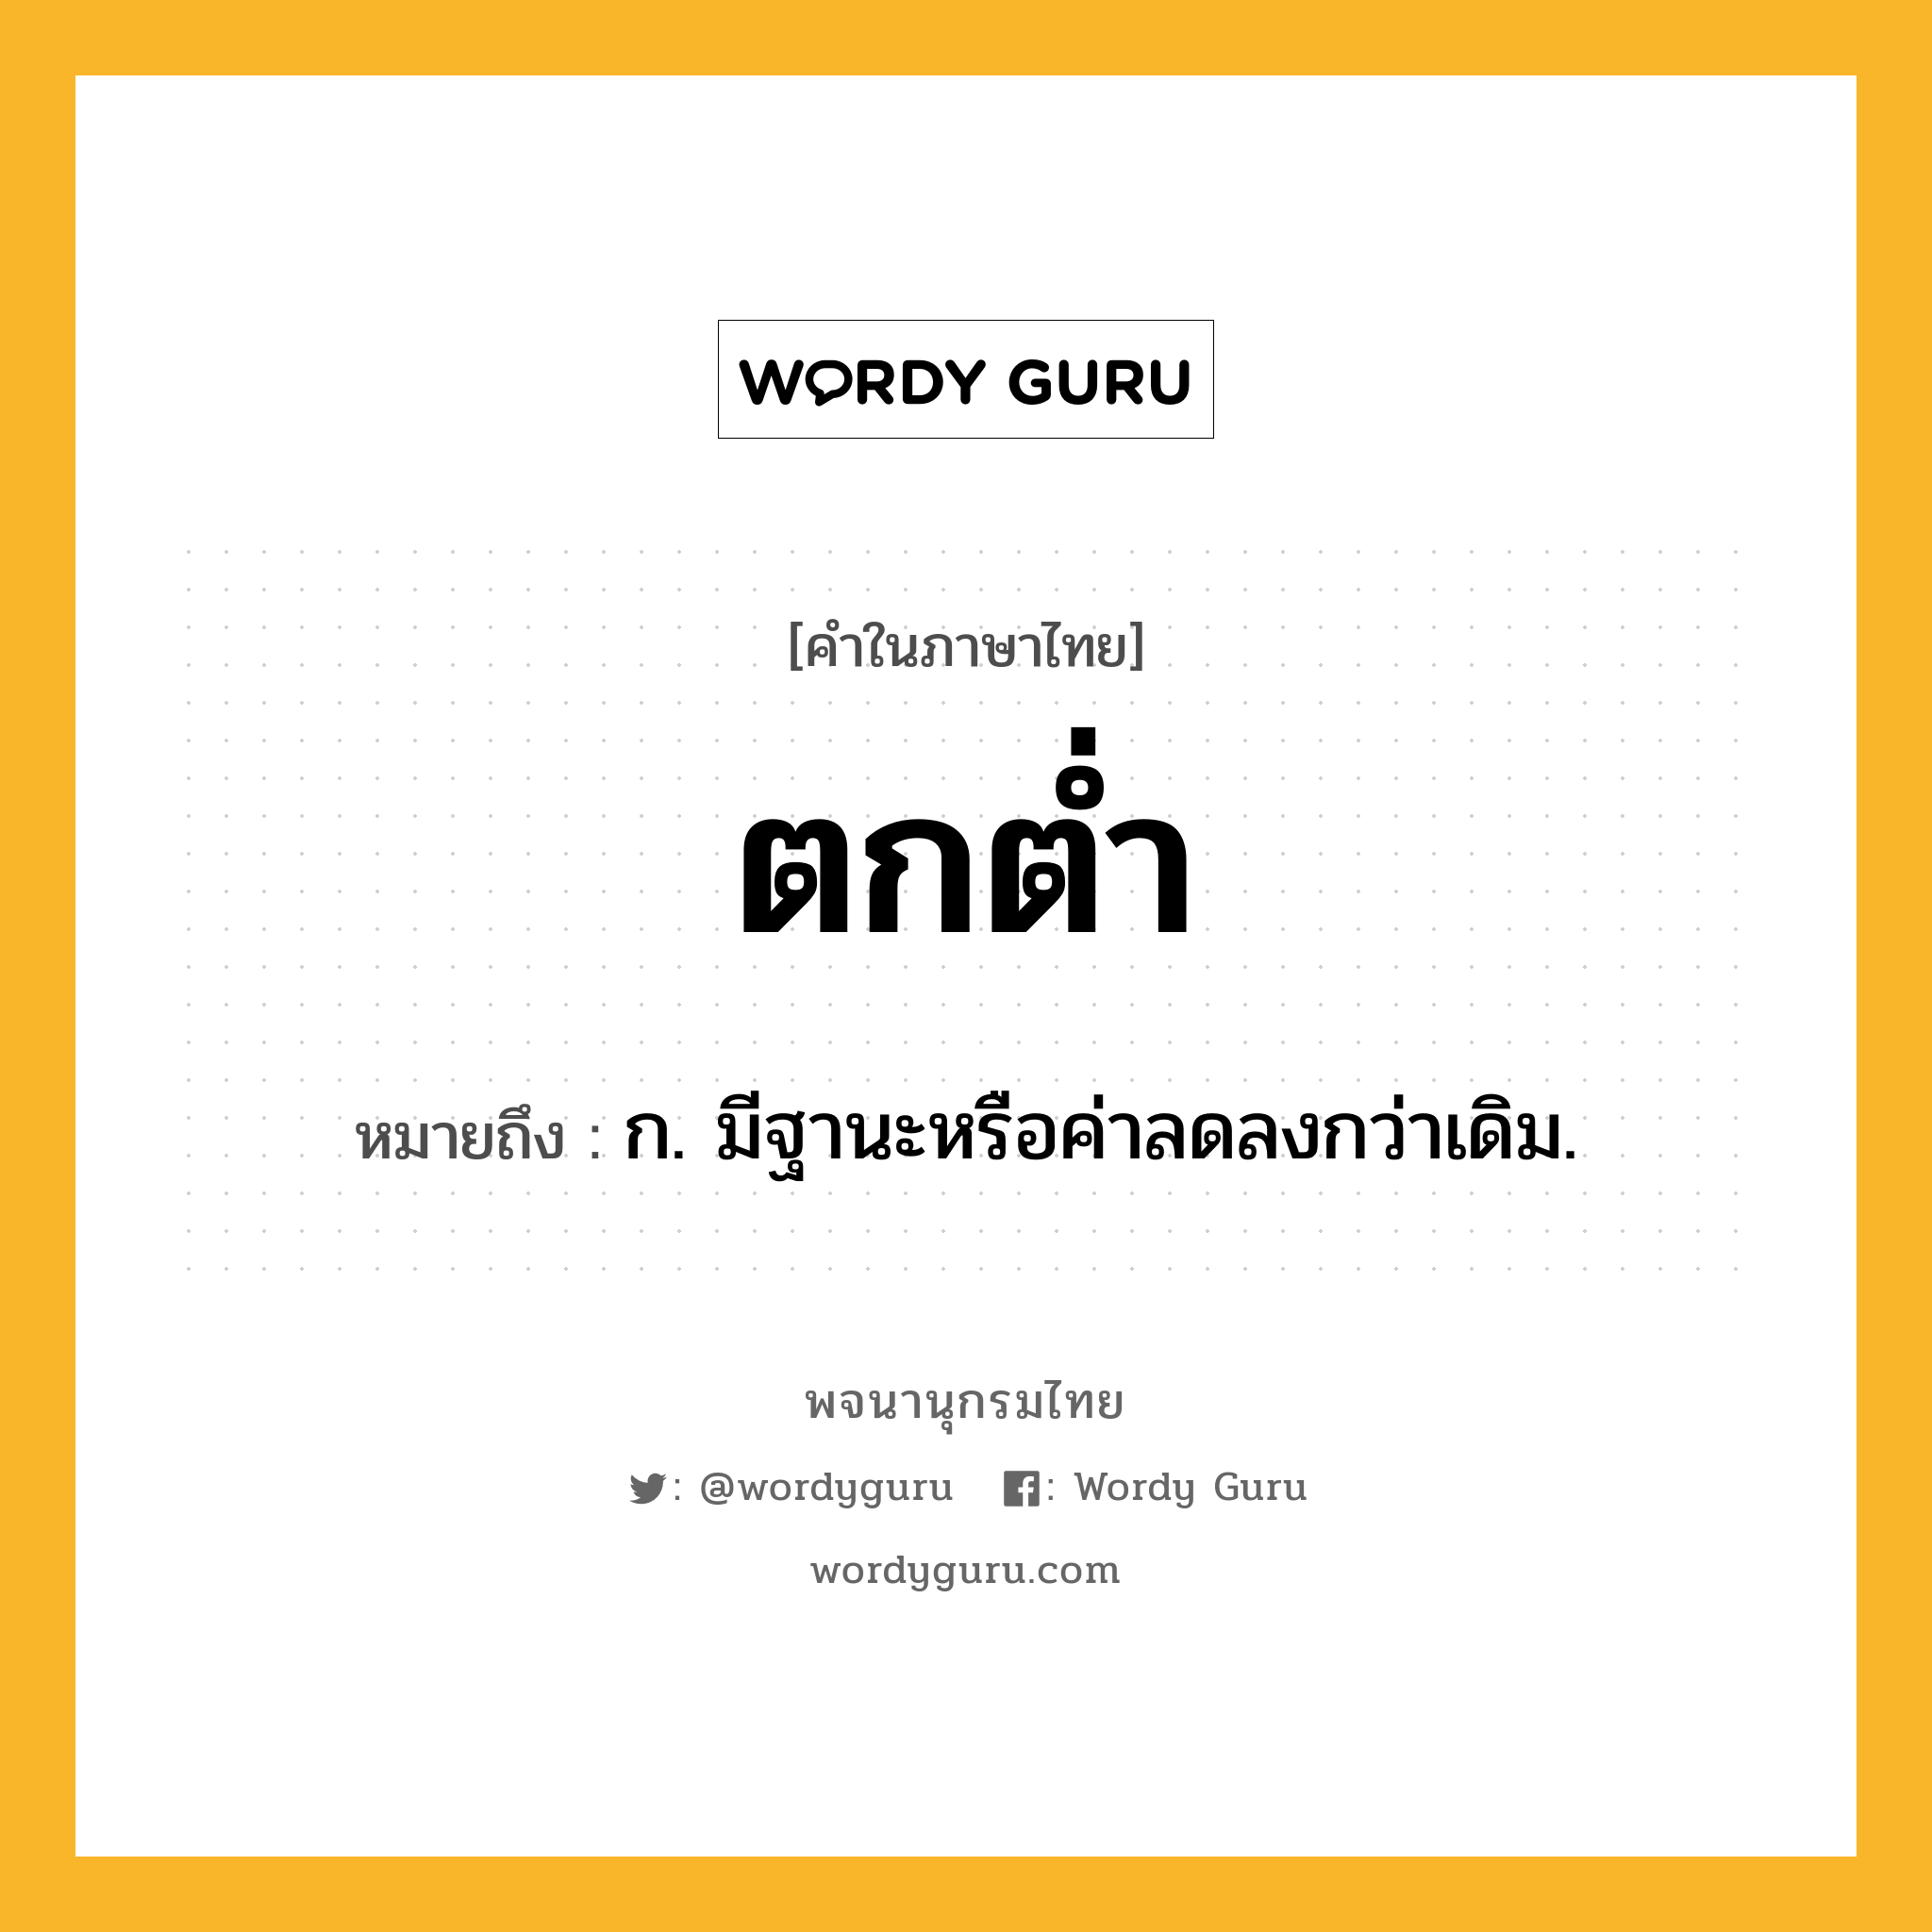 ตกต่ำ หมายถึงอะไร?, คำในภาษาไทย ตกต่ำ หมายถึง ก. มีฐานะหรือค่าลดลงกว่าเดิม.